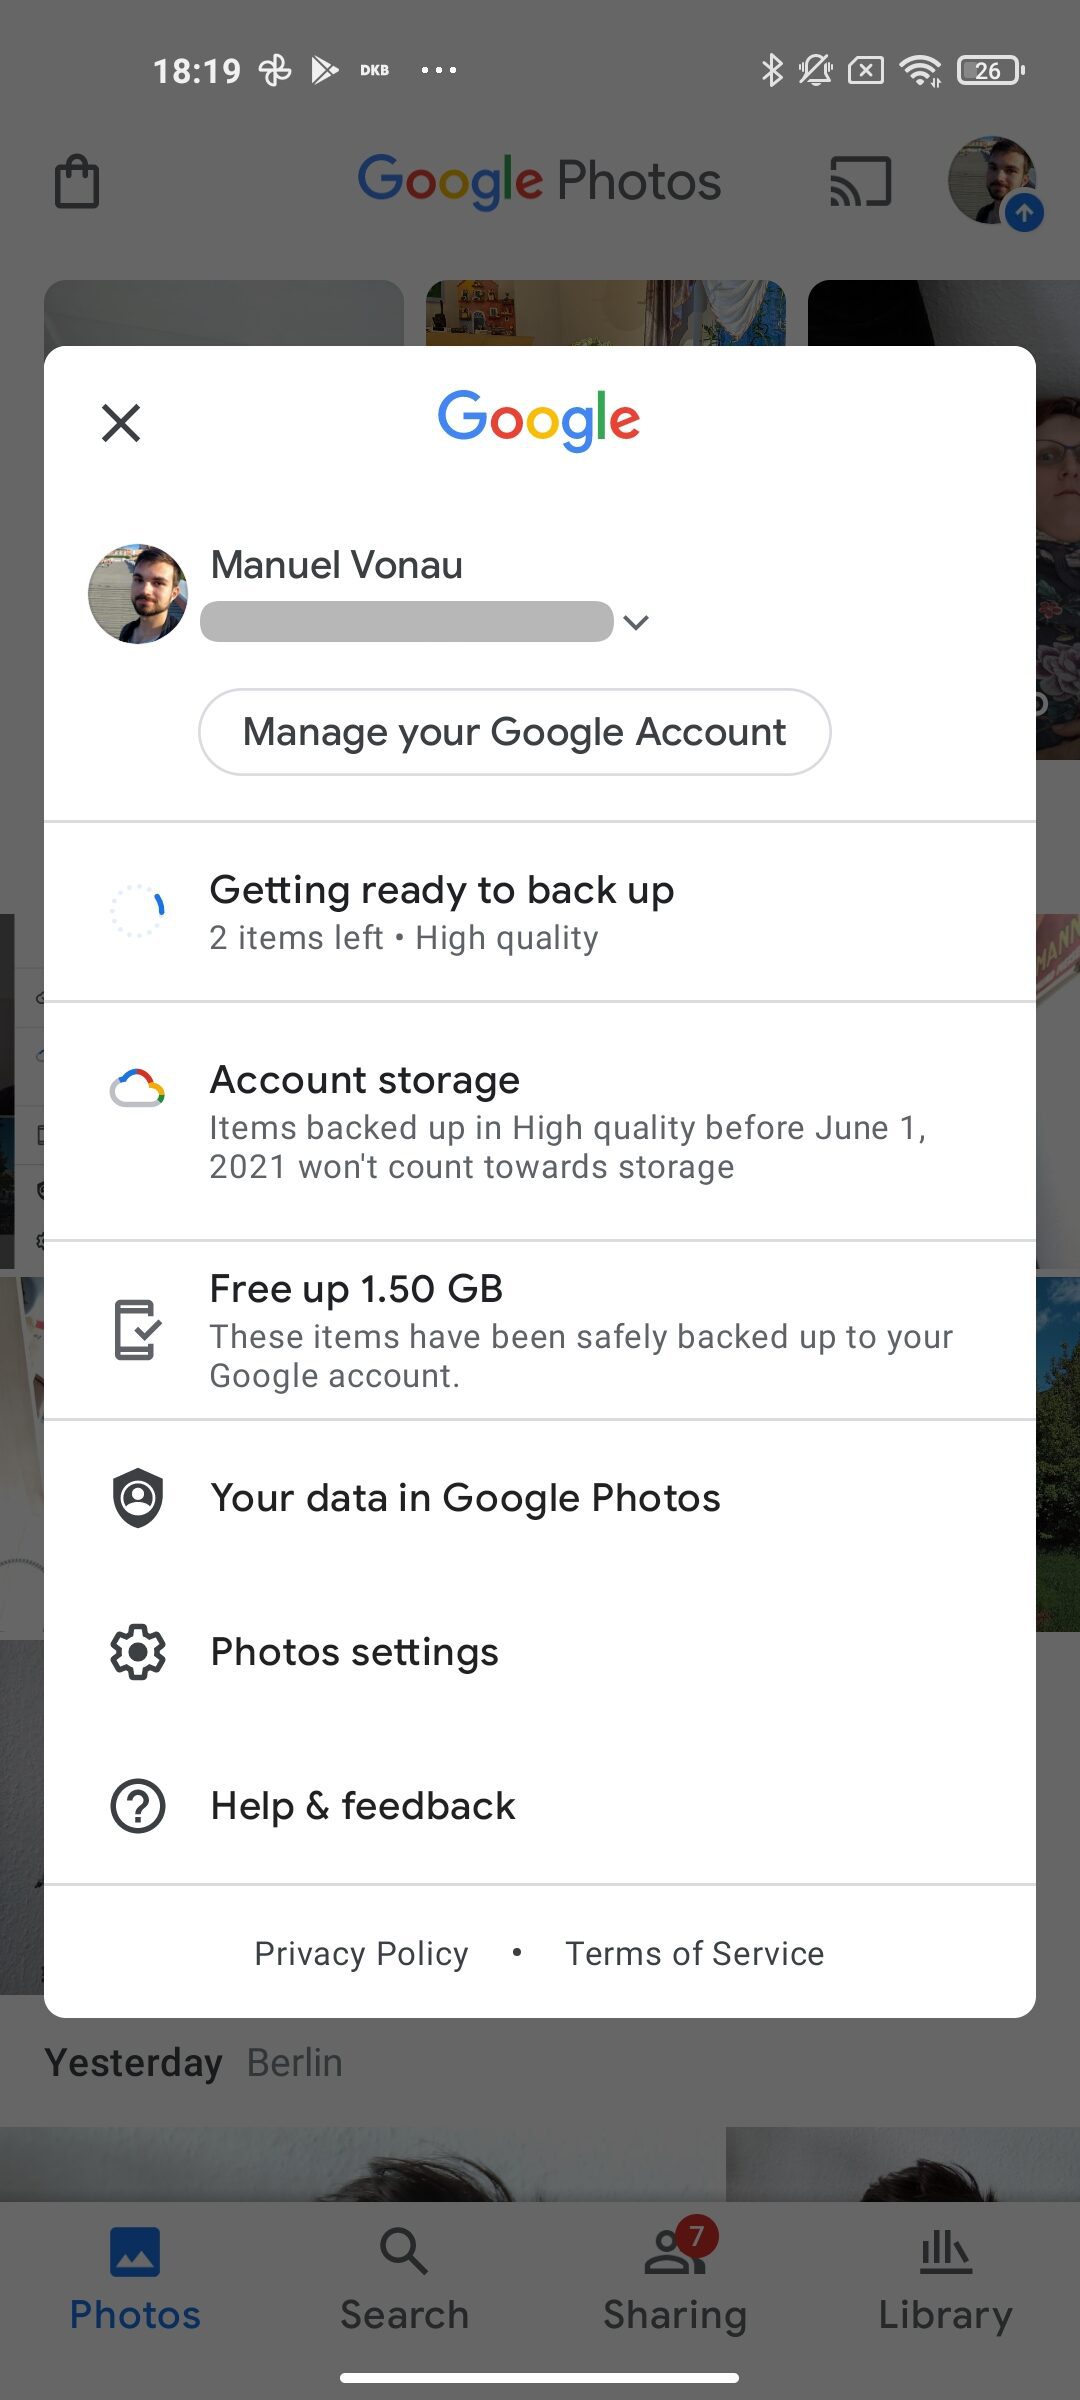 Завтра Google прекращает бесплатное неограниченное хранение фотографий на Google Фото